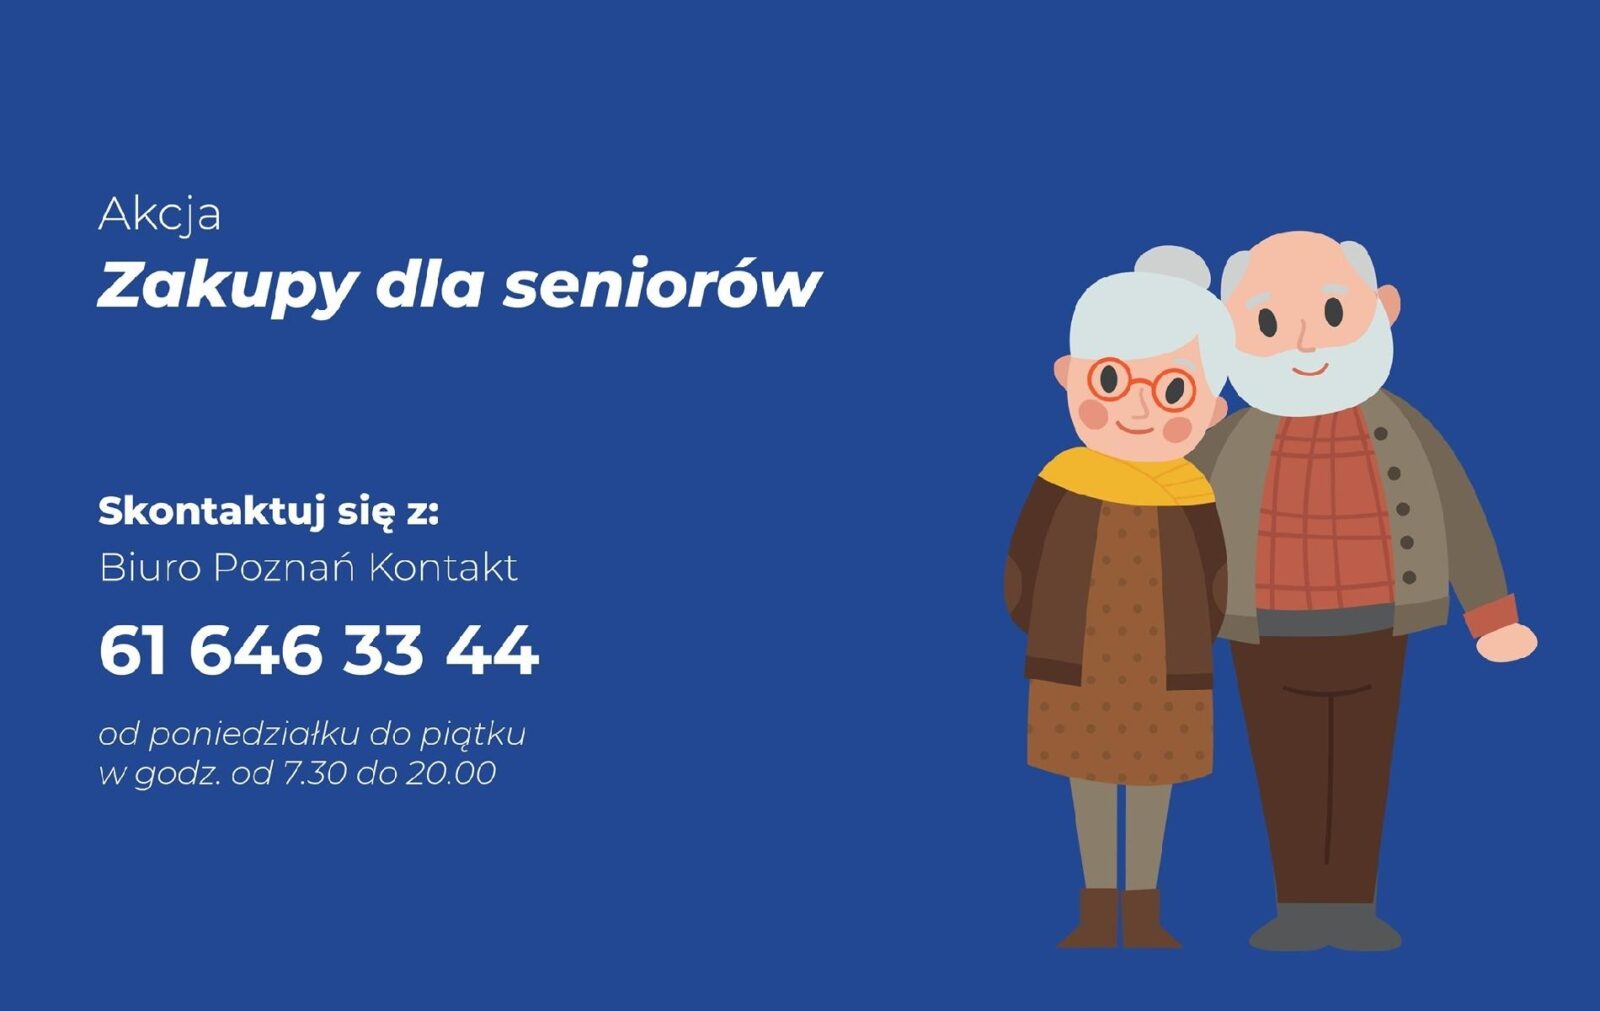 grafika z plakatem promocyjnym akcji zakupy dla seniora tel 61 646 33 44